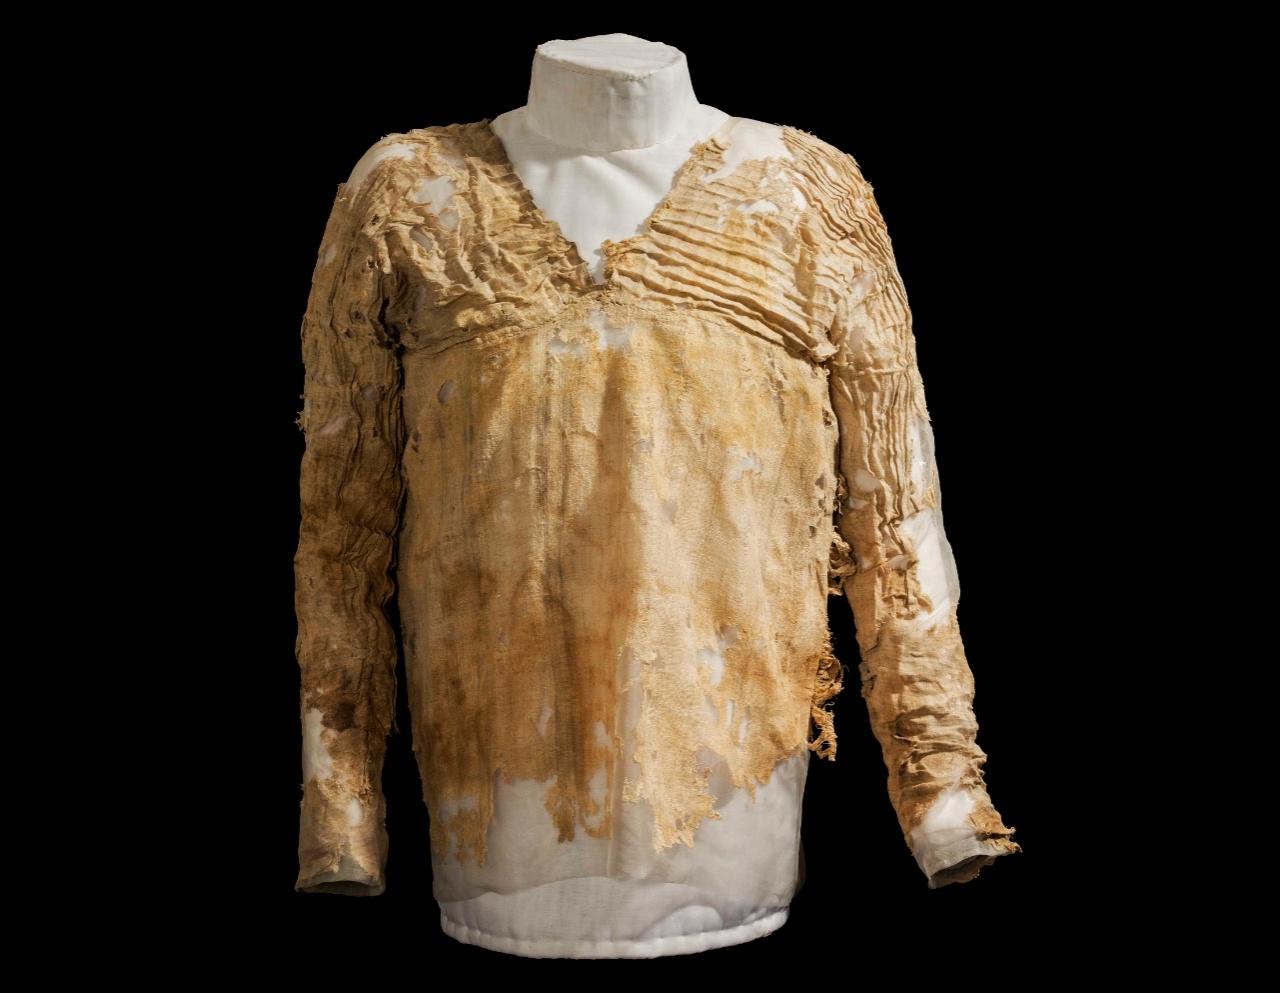 Neverjetna zgodba o najstarejši obleki na svetu iz Egipta, ki je stara več kot 5,000 let 1